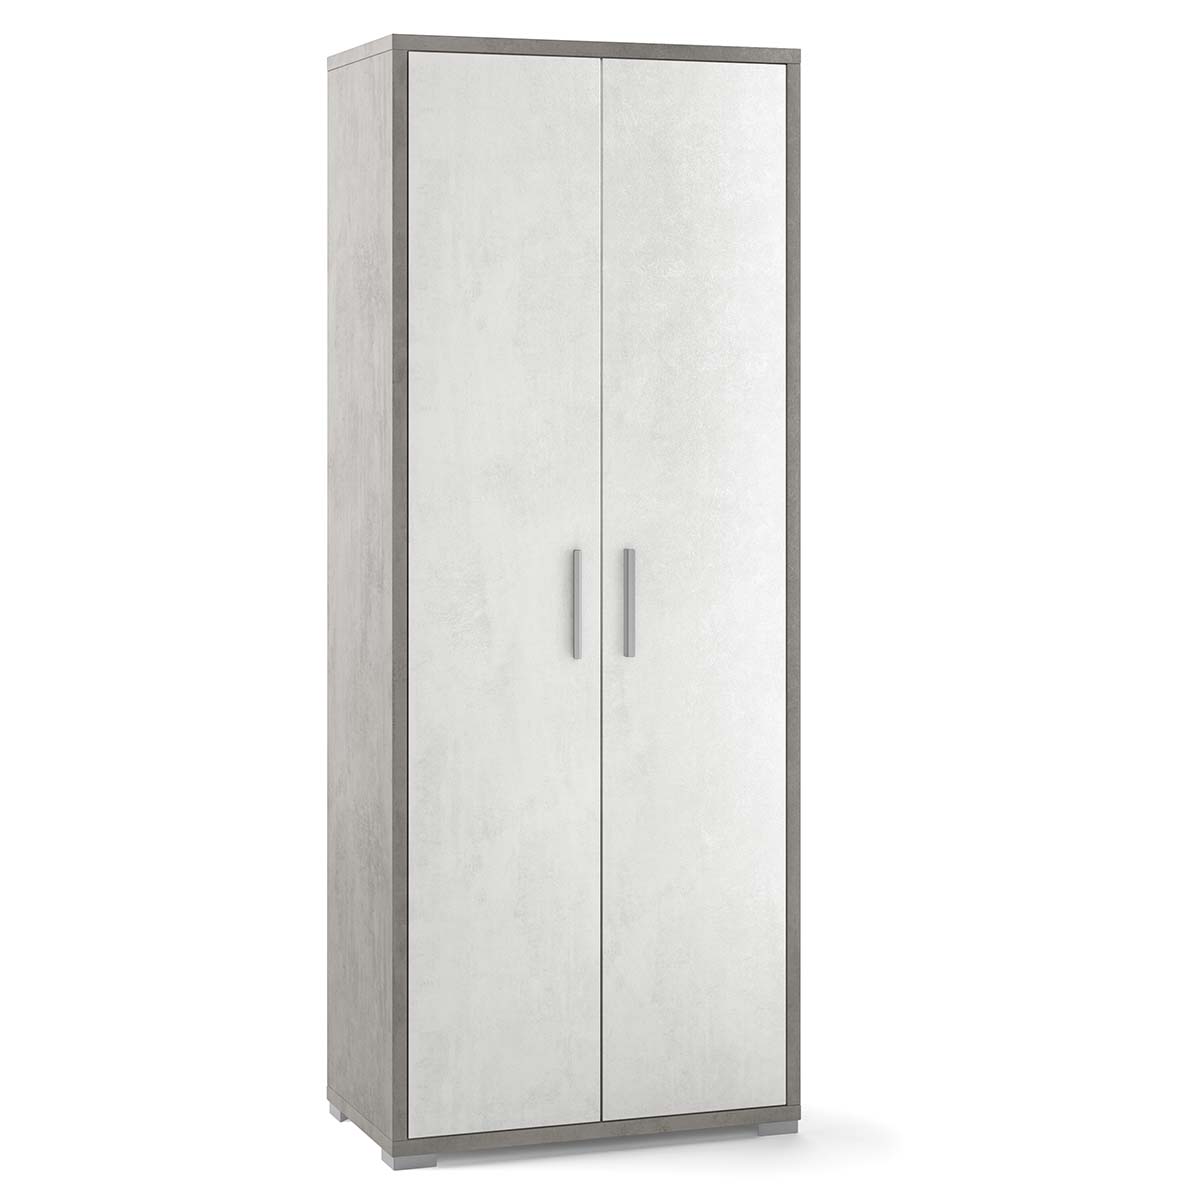 Armario multiusos 2 puerta 3 estantes color blanco AVA